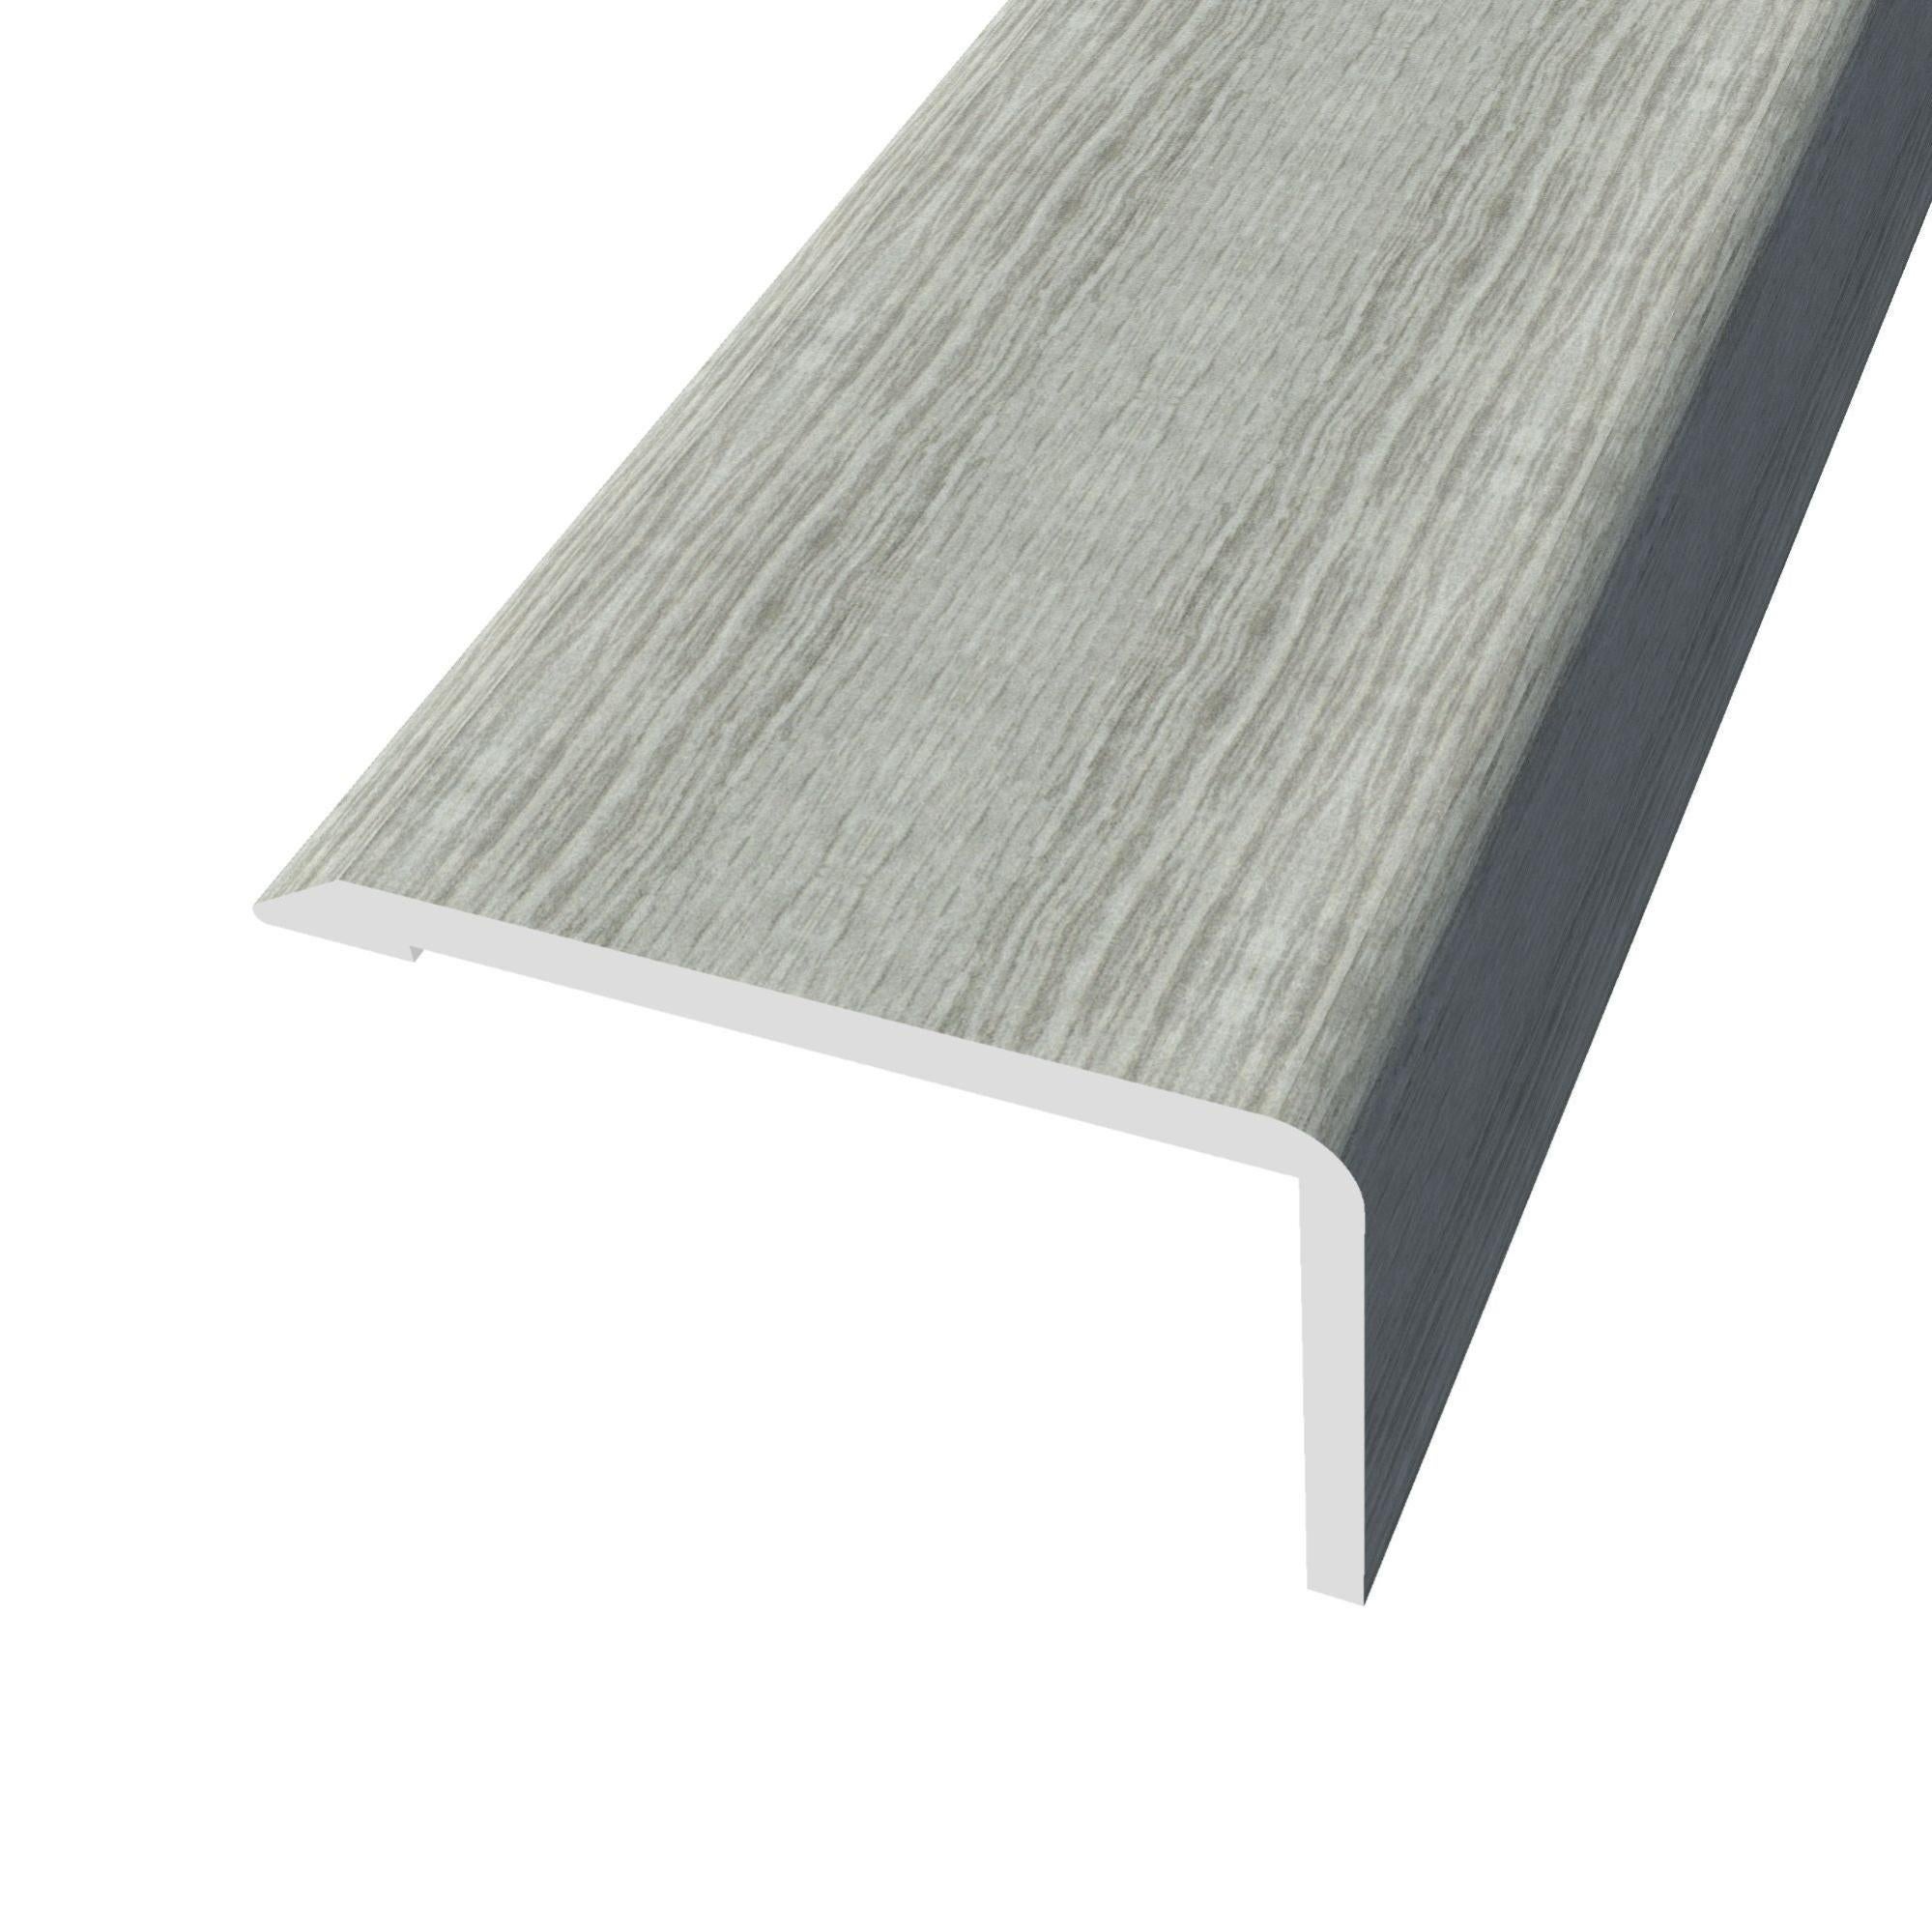 Perfil de acabado de aluminio gris / plata 270 cm mod012